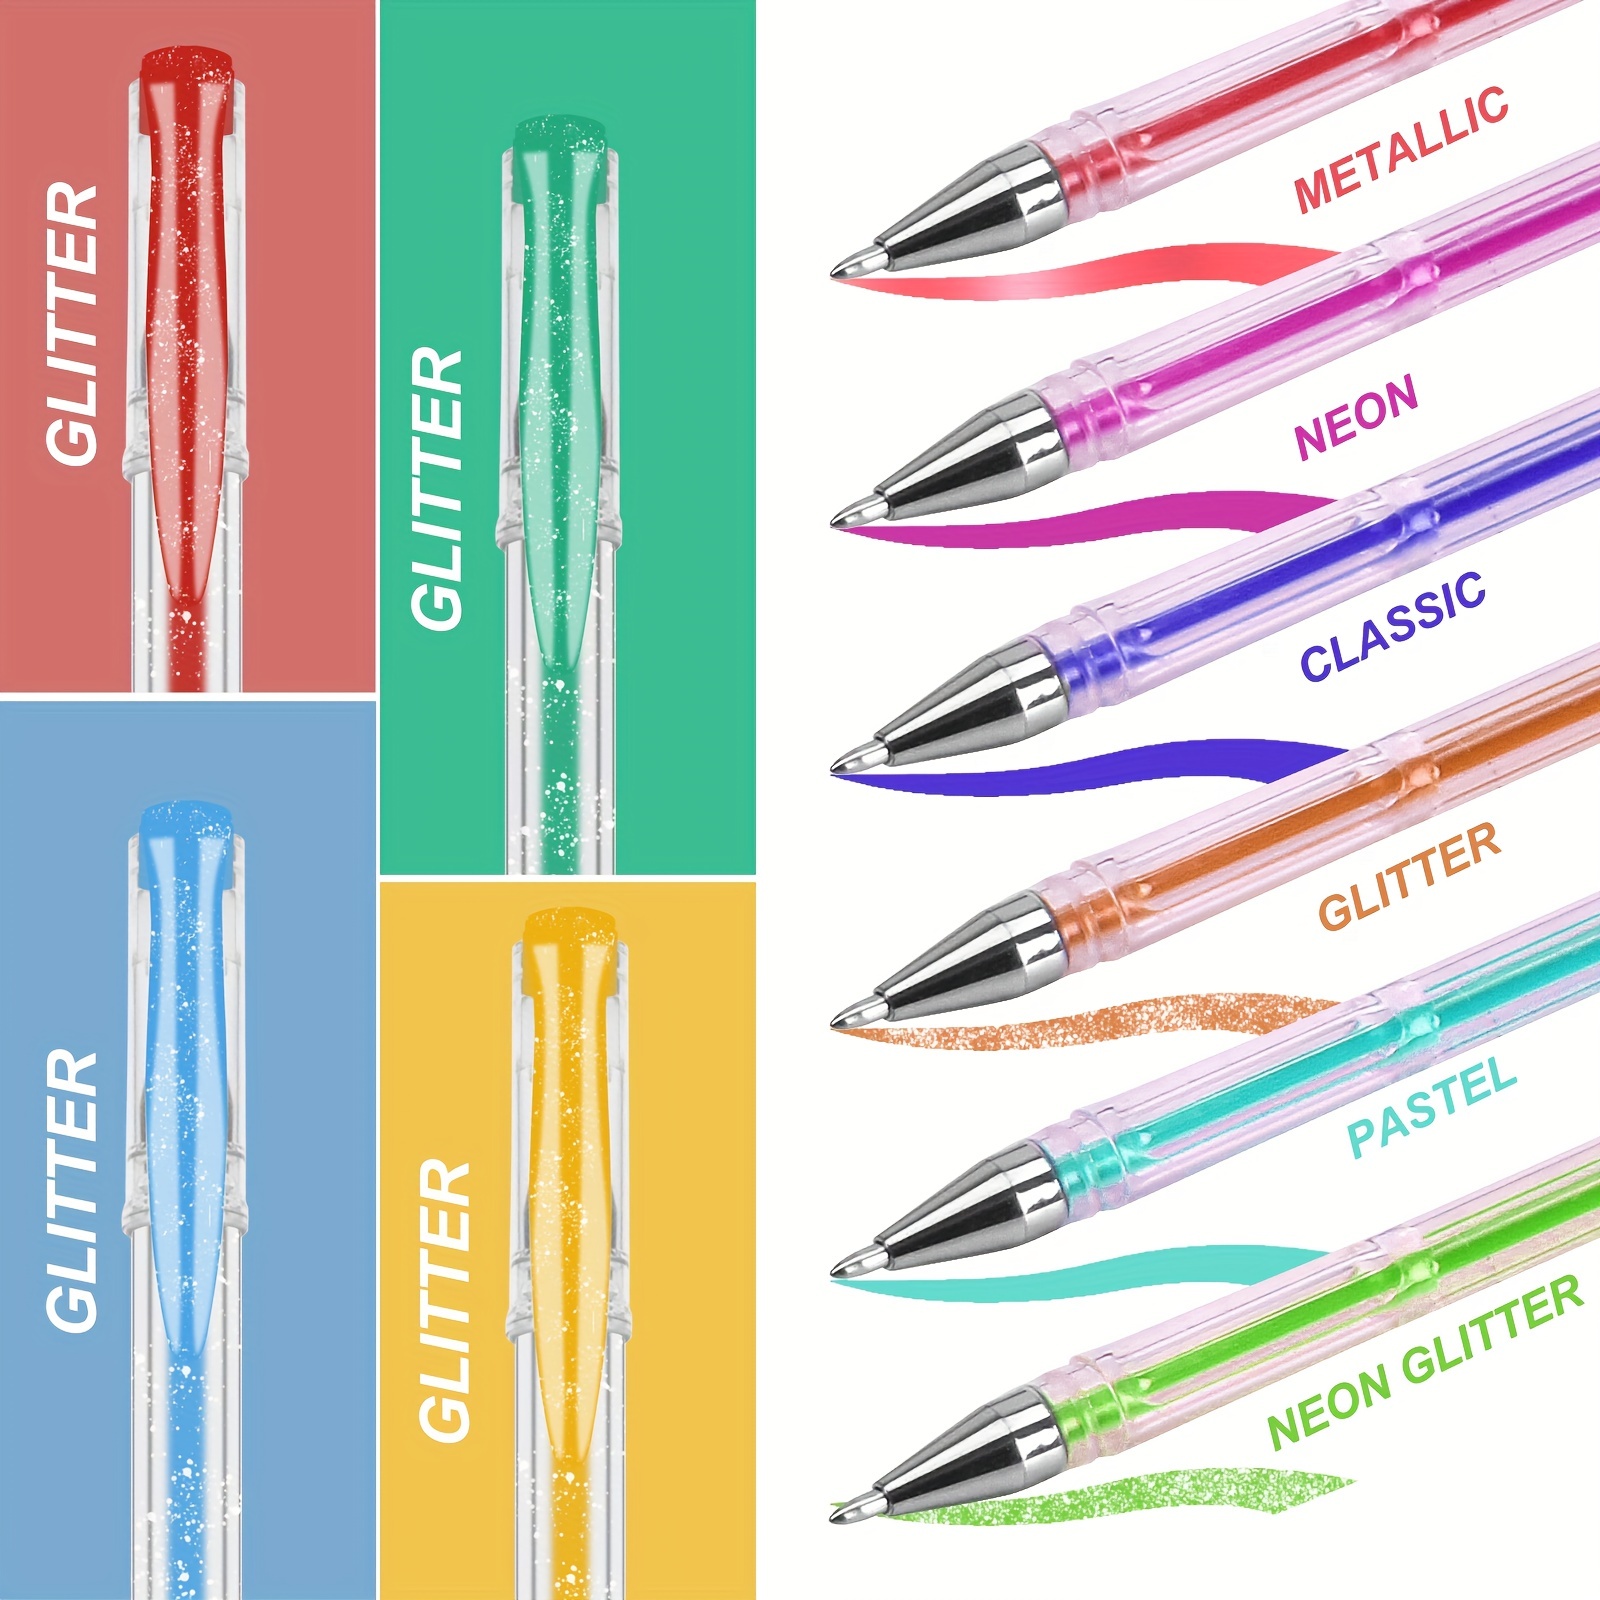 Gel Pen Set Contains 50 Gel Pens+50 Replacement Refills+1 - Temu